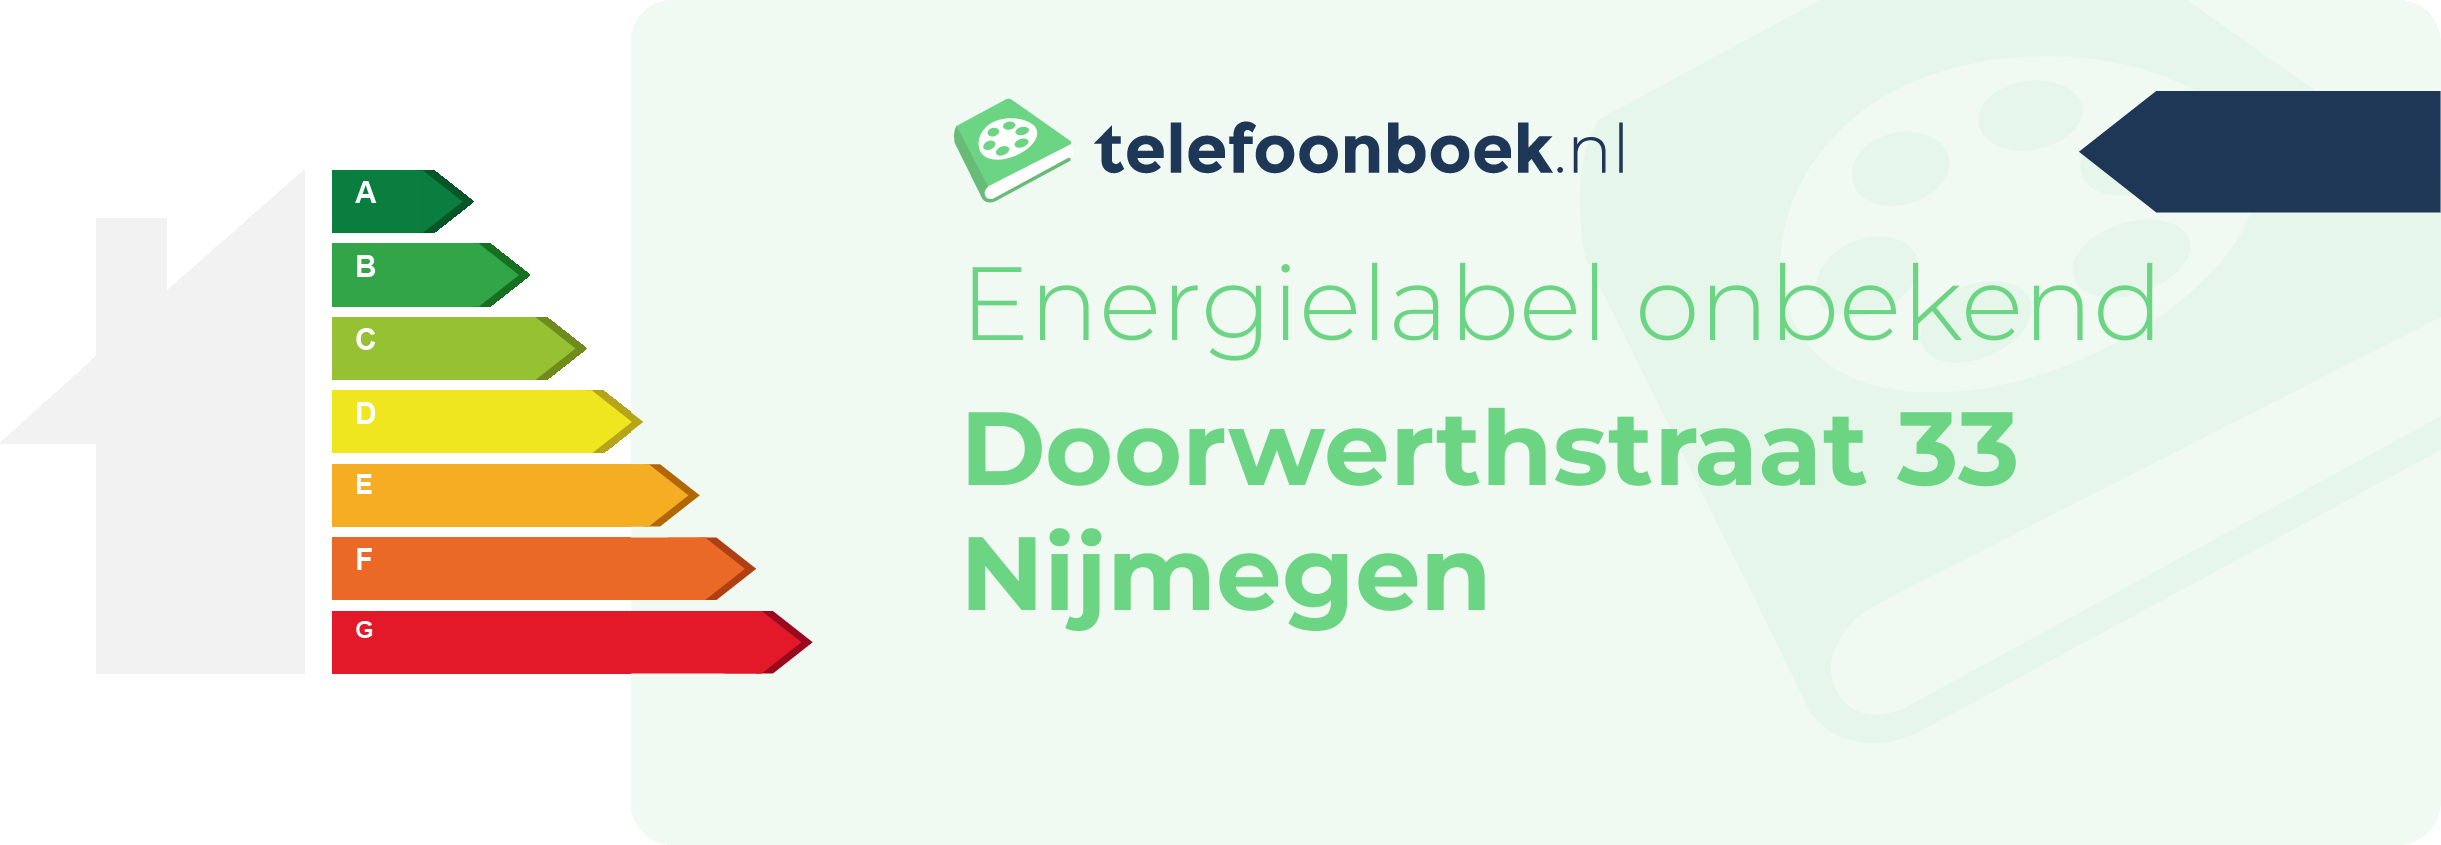 Energielabel Doorwerthstraat 33 Nijmegen